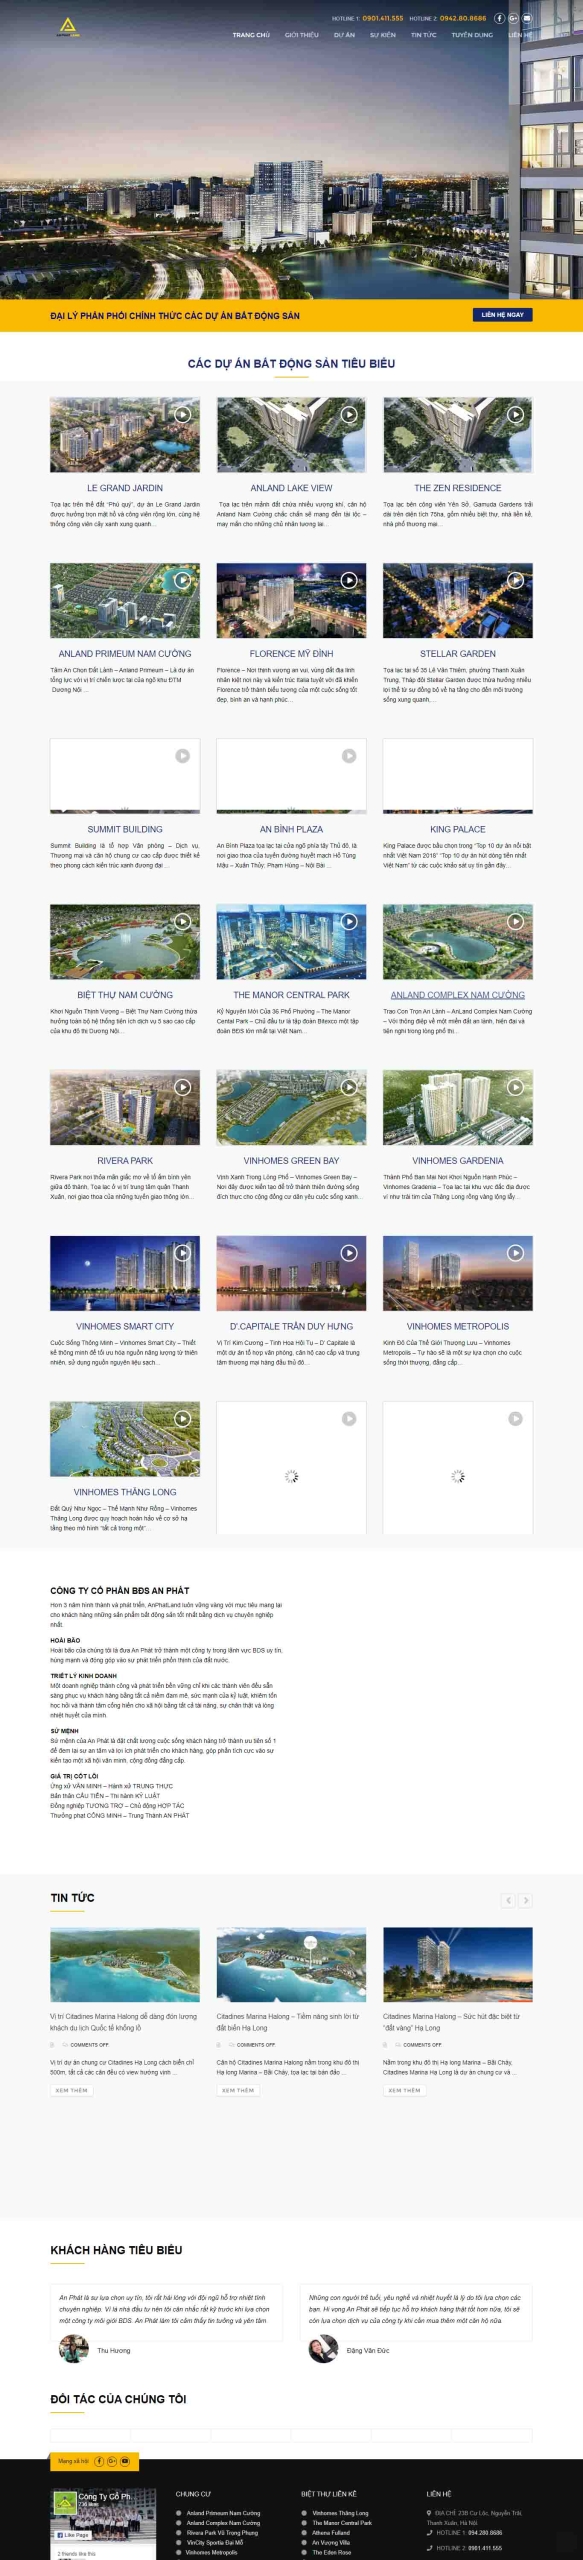 Mẫu giao diện thiết kế website bất động sản đẹp